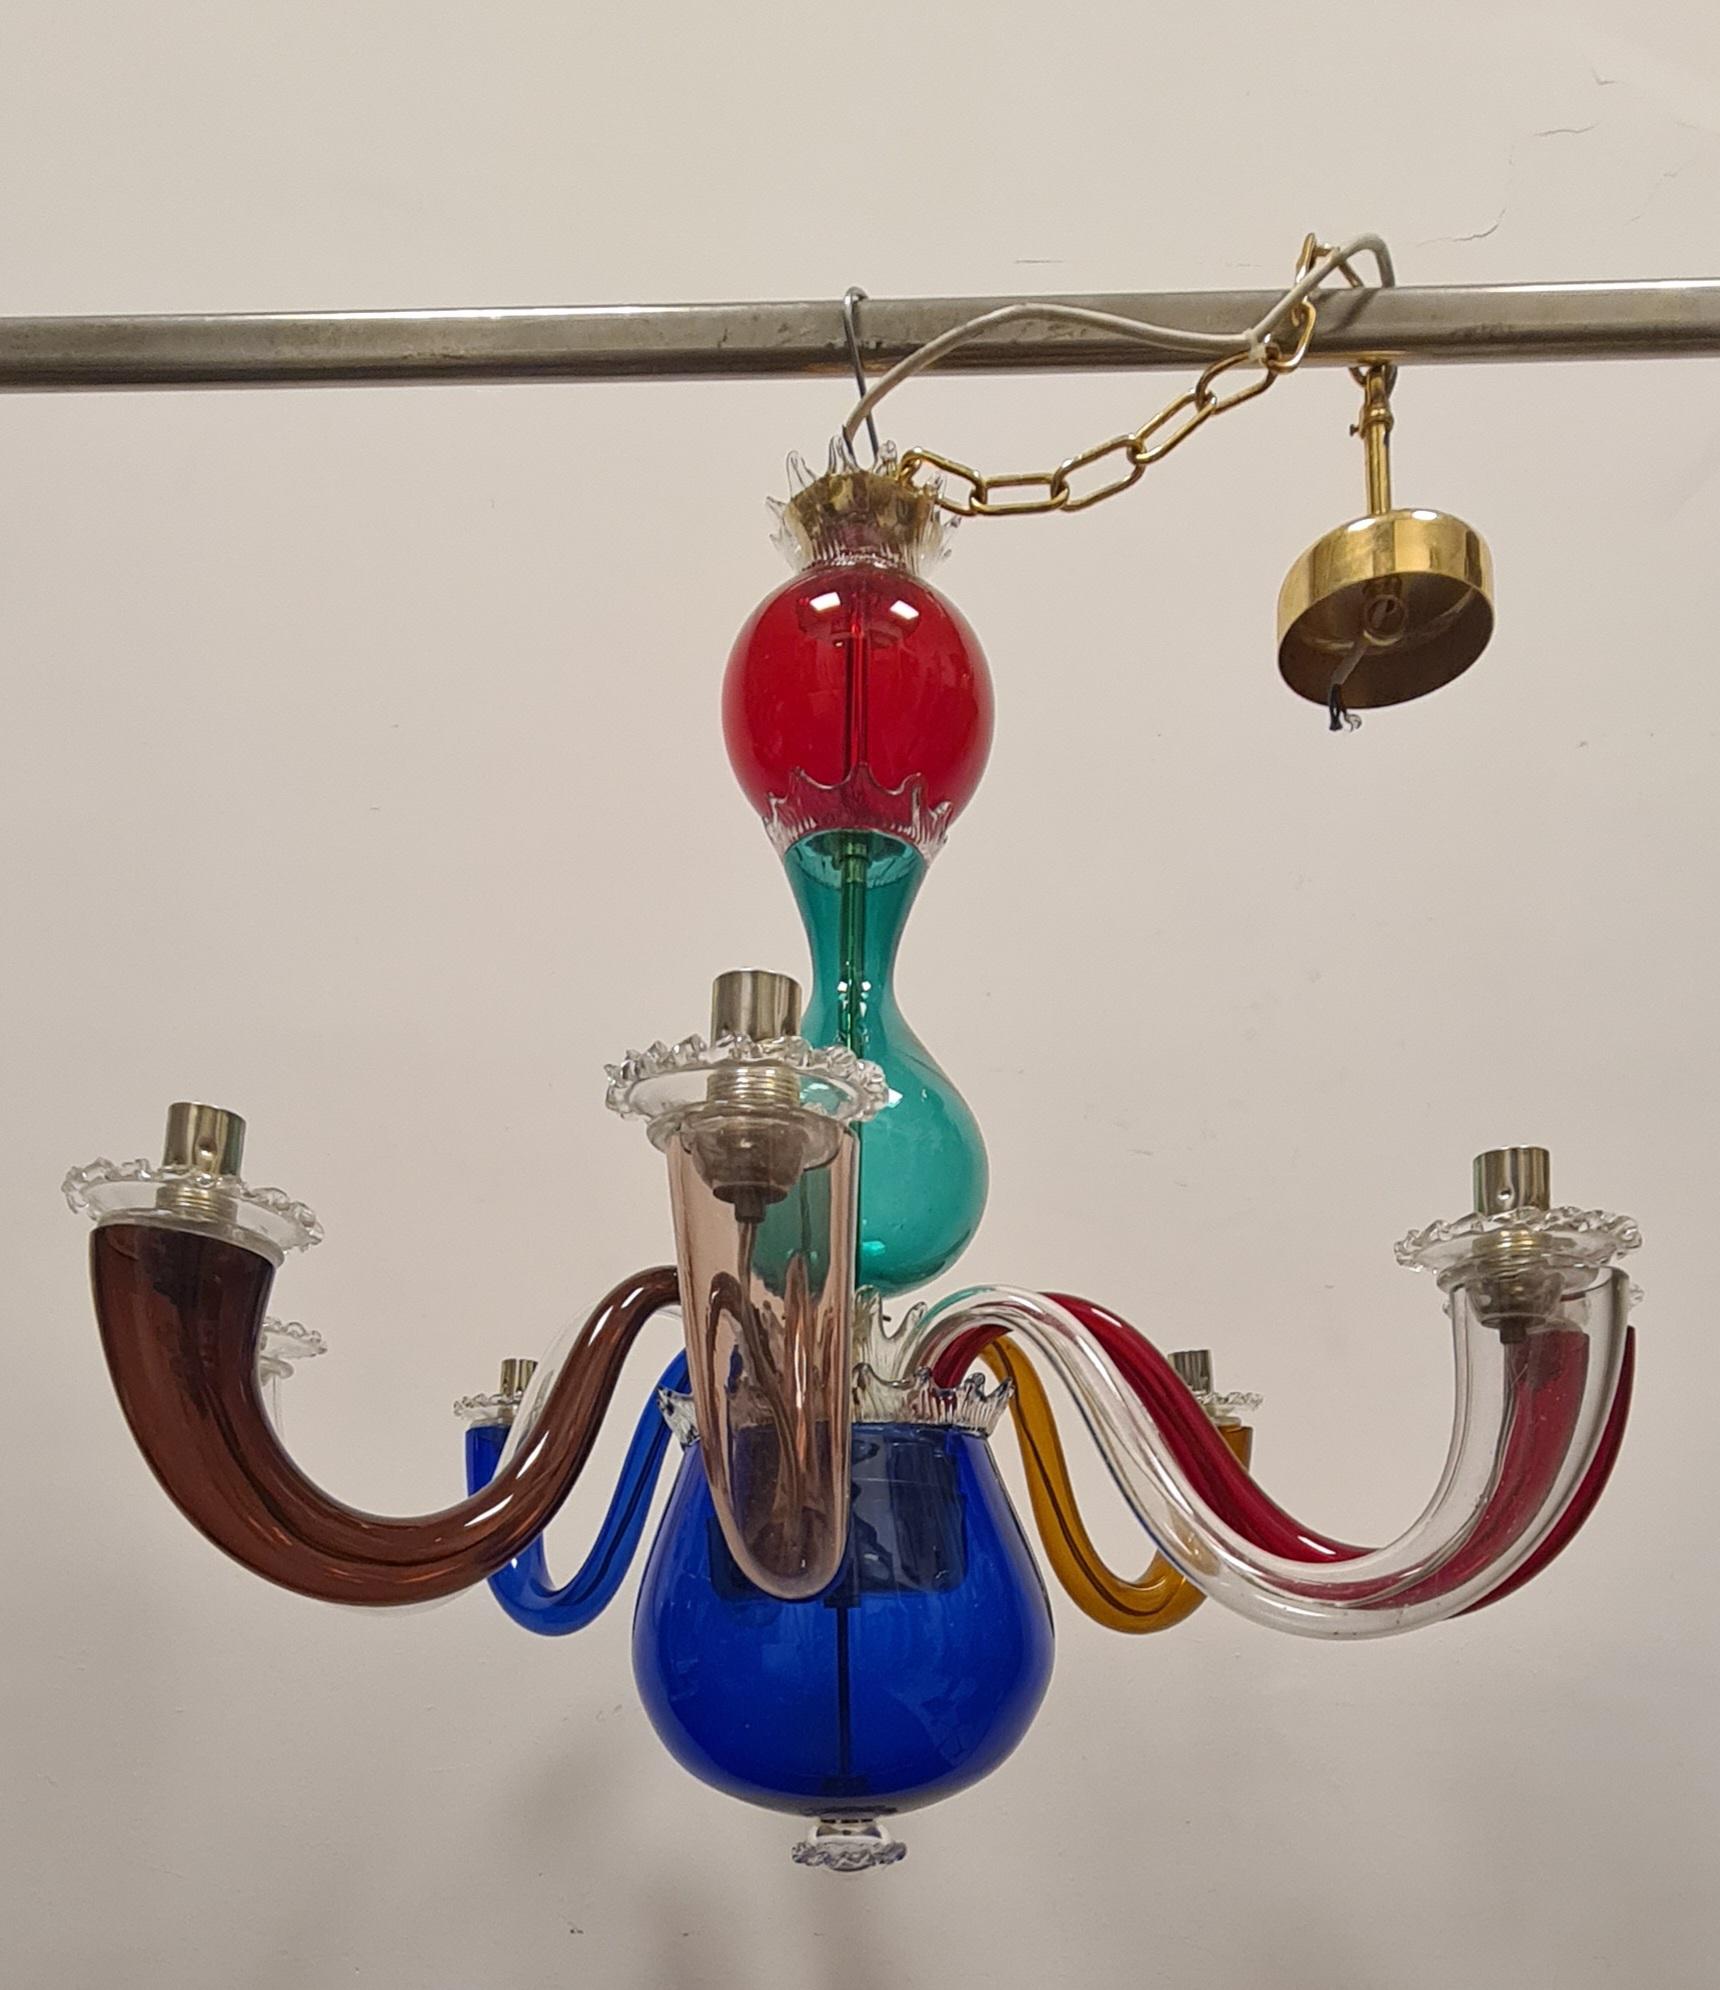 Maestoso lampadario disegnato da Gio Ponti per Venini.

Lampadario a otto braccia in vetro trasparente policromo e scheletro in ottone, fu' realizzato negli anni 70' su disegno di Gio Ponti del 1946.

Il lampadario presenta sulla boccia blu la